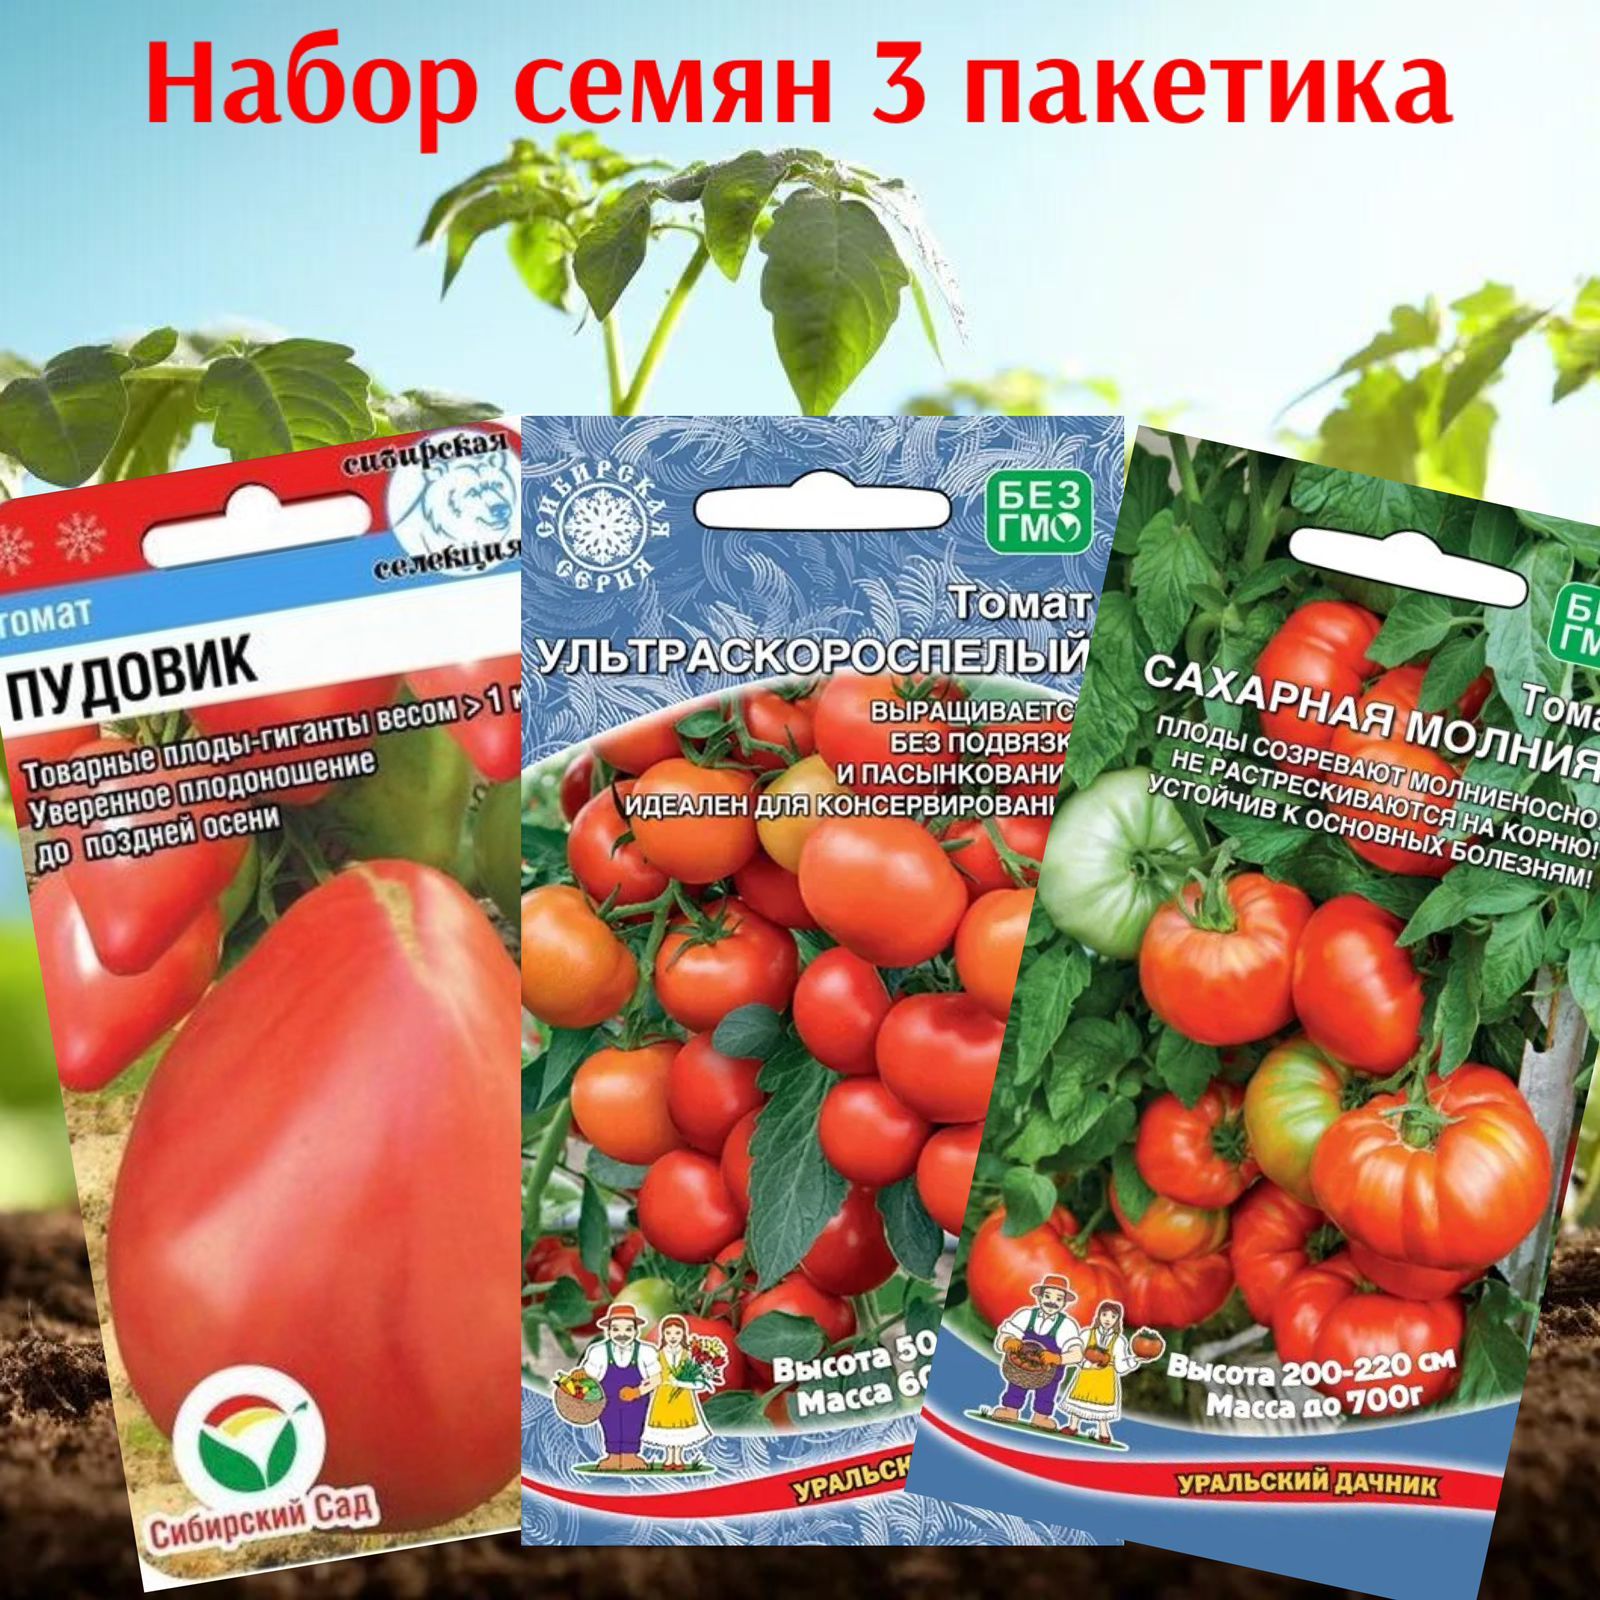 Уральский дачник томат характеристика и отзывы